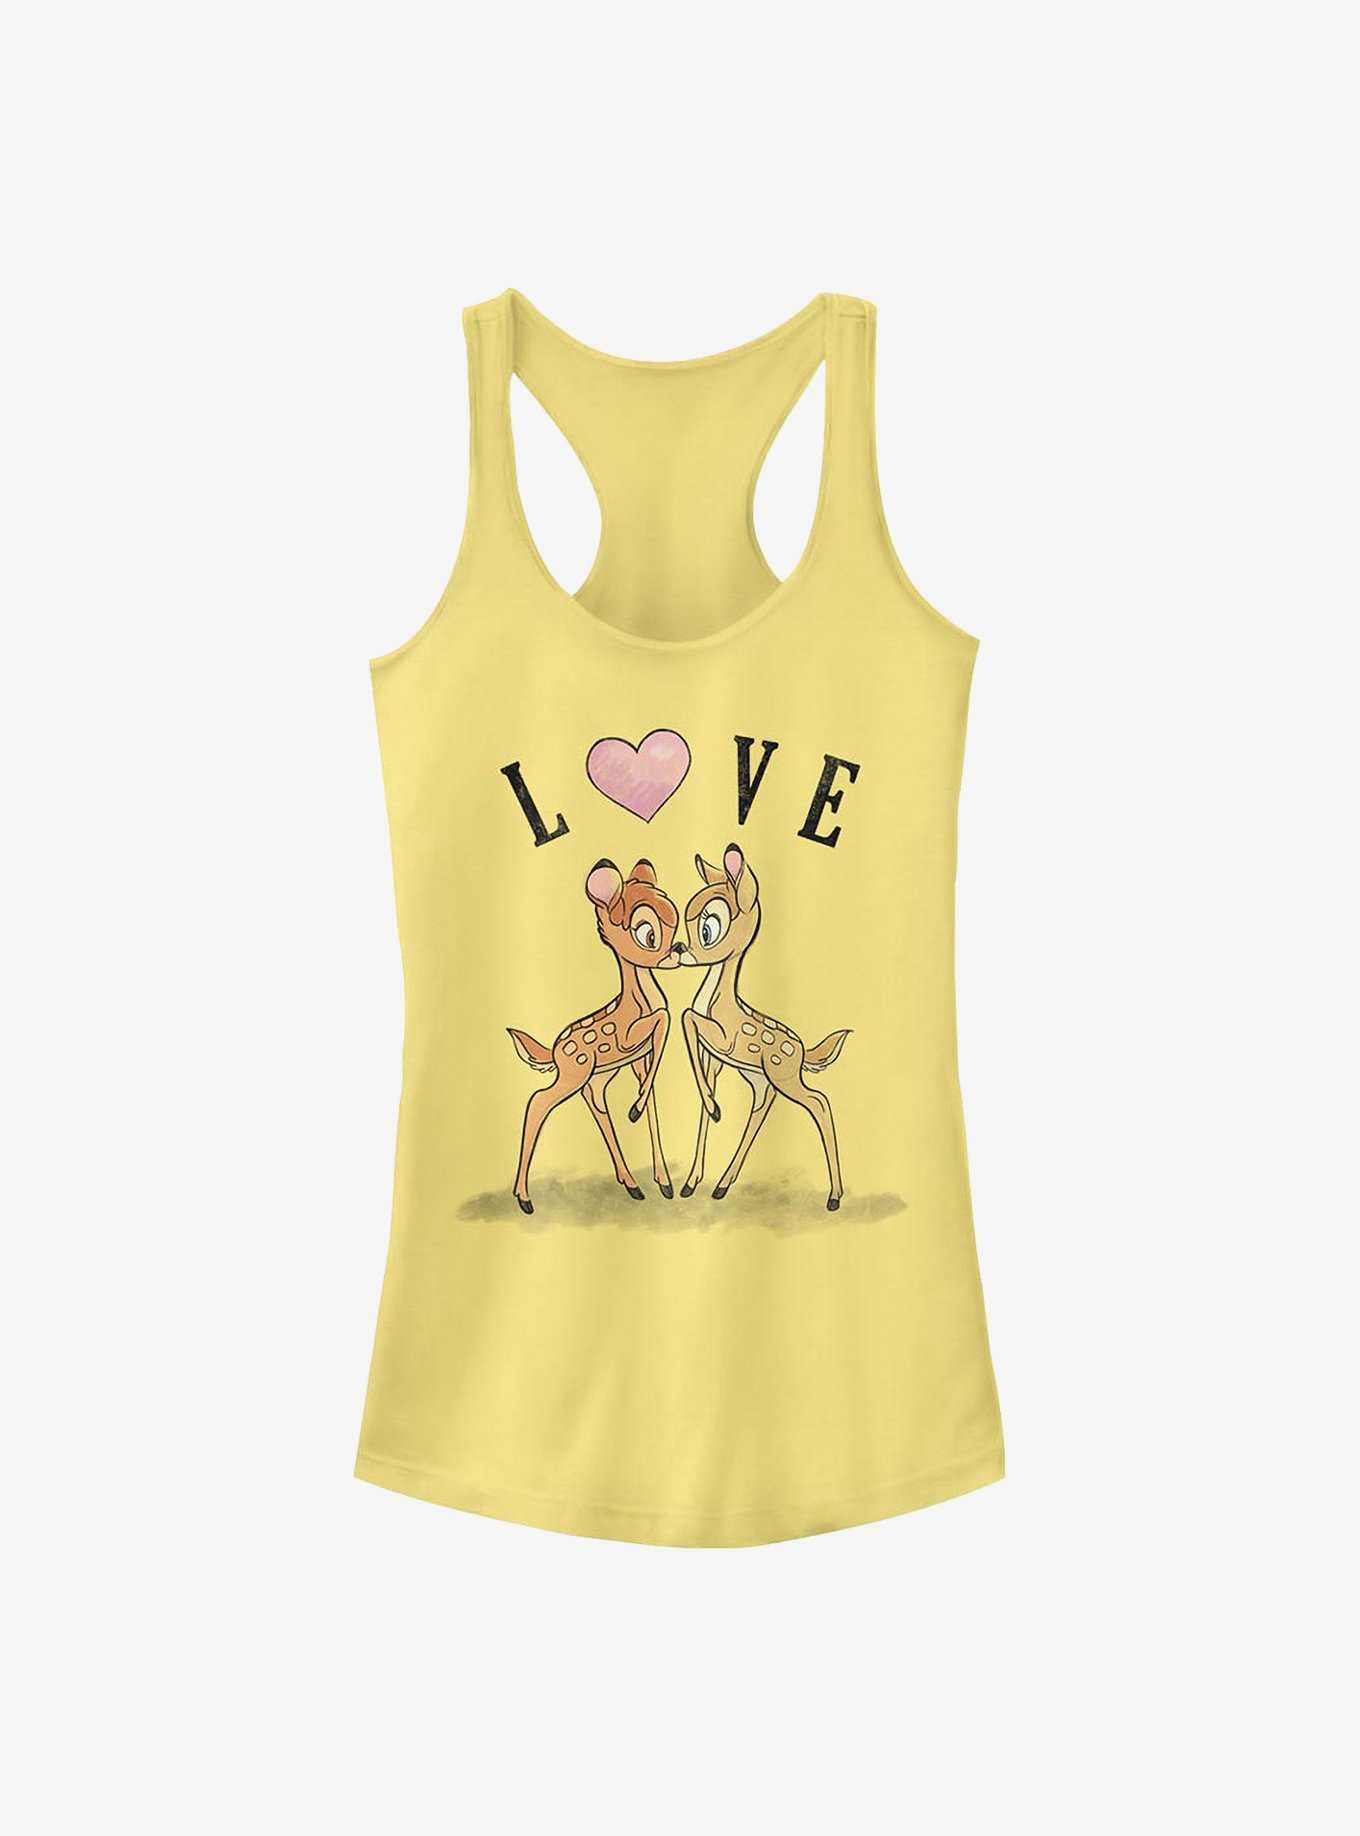 Disney Bambi Love Girls Tank, , hi-res